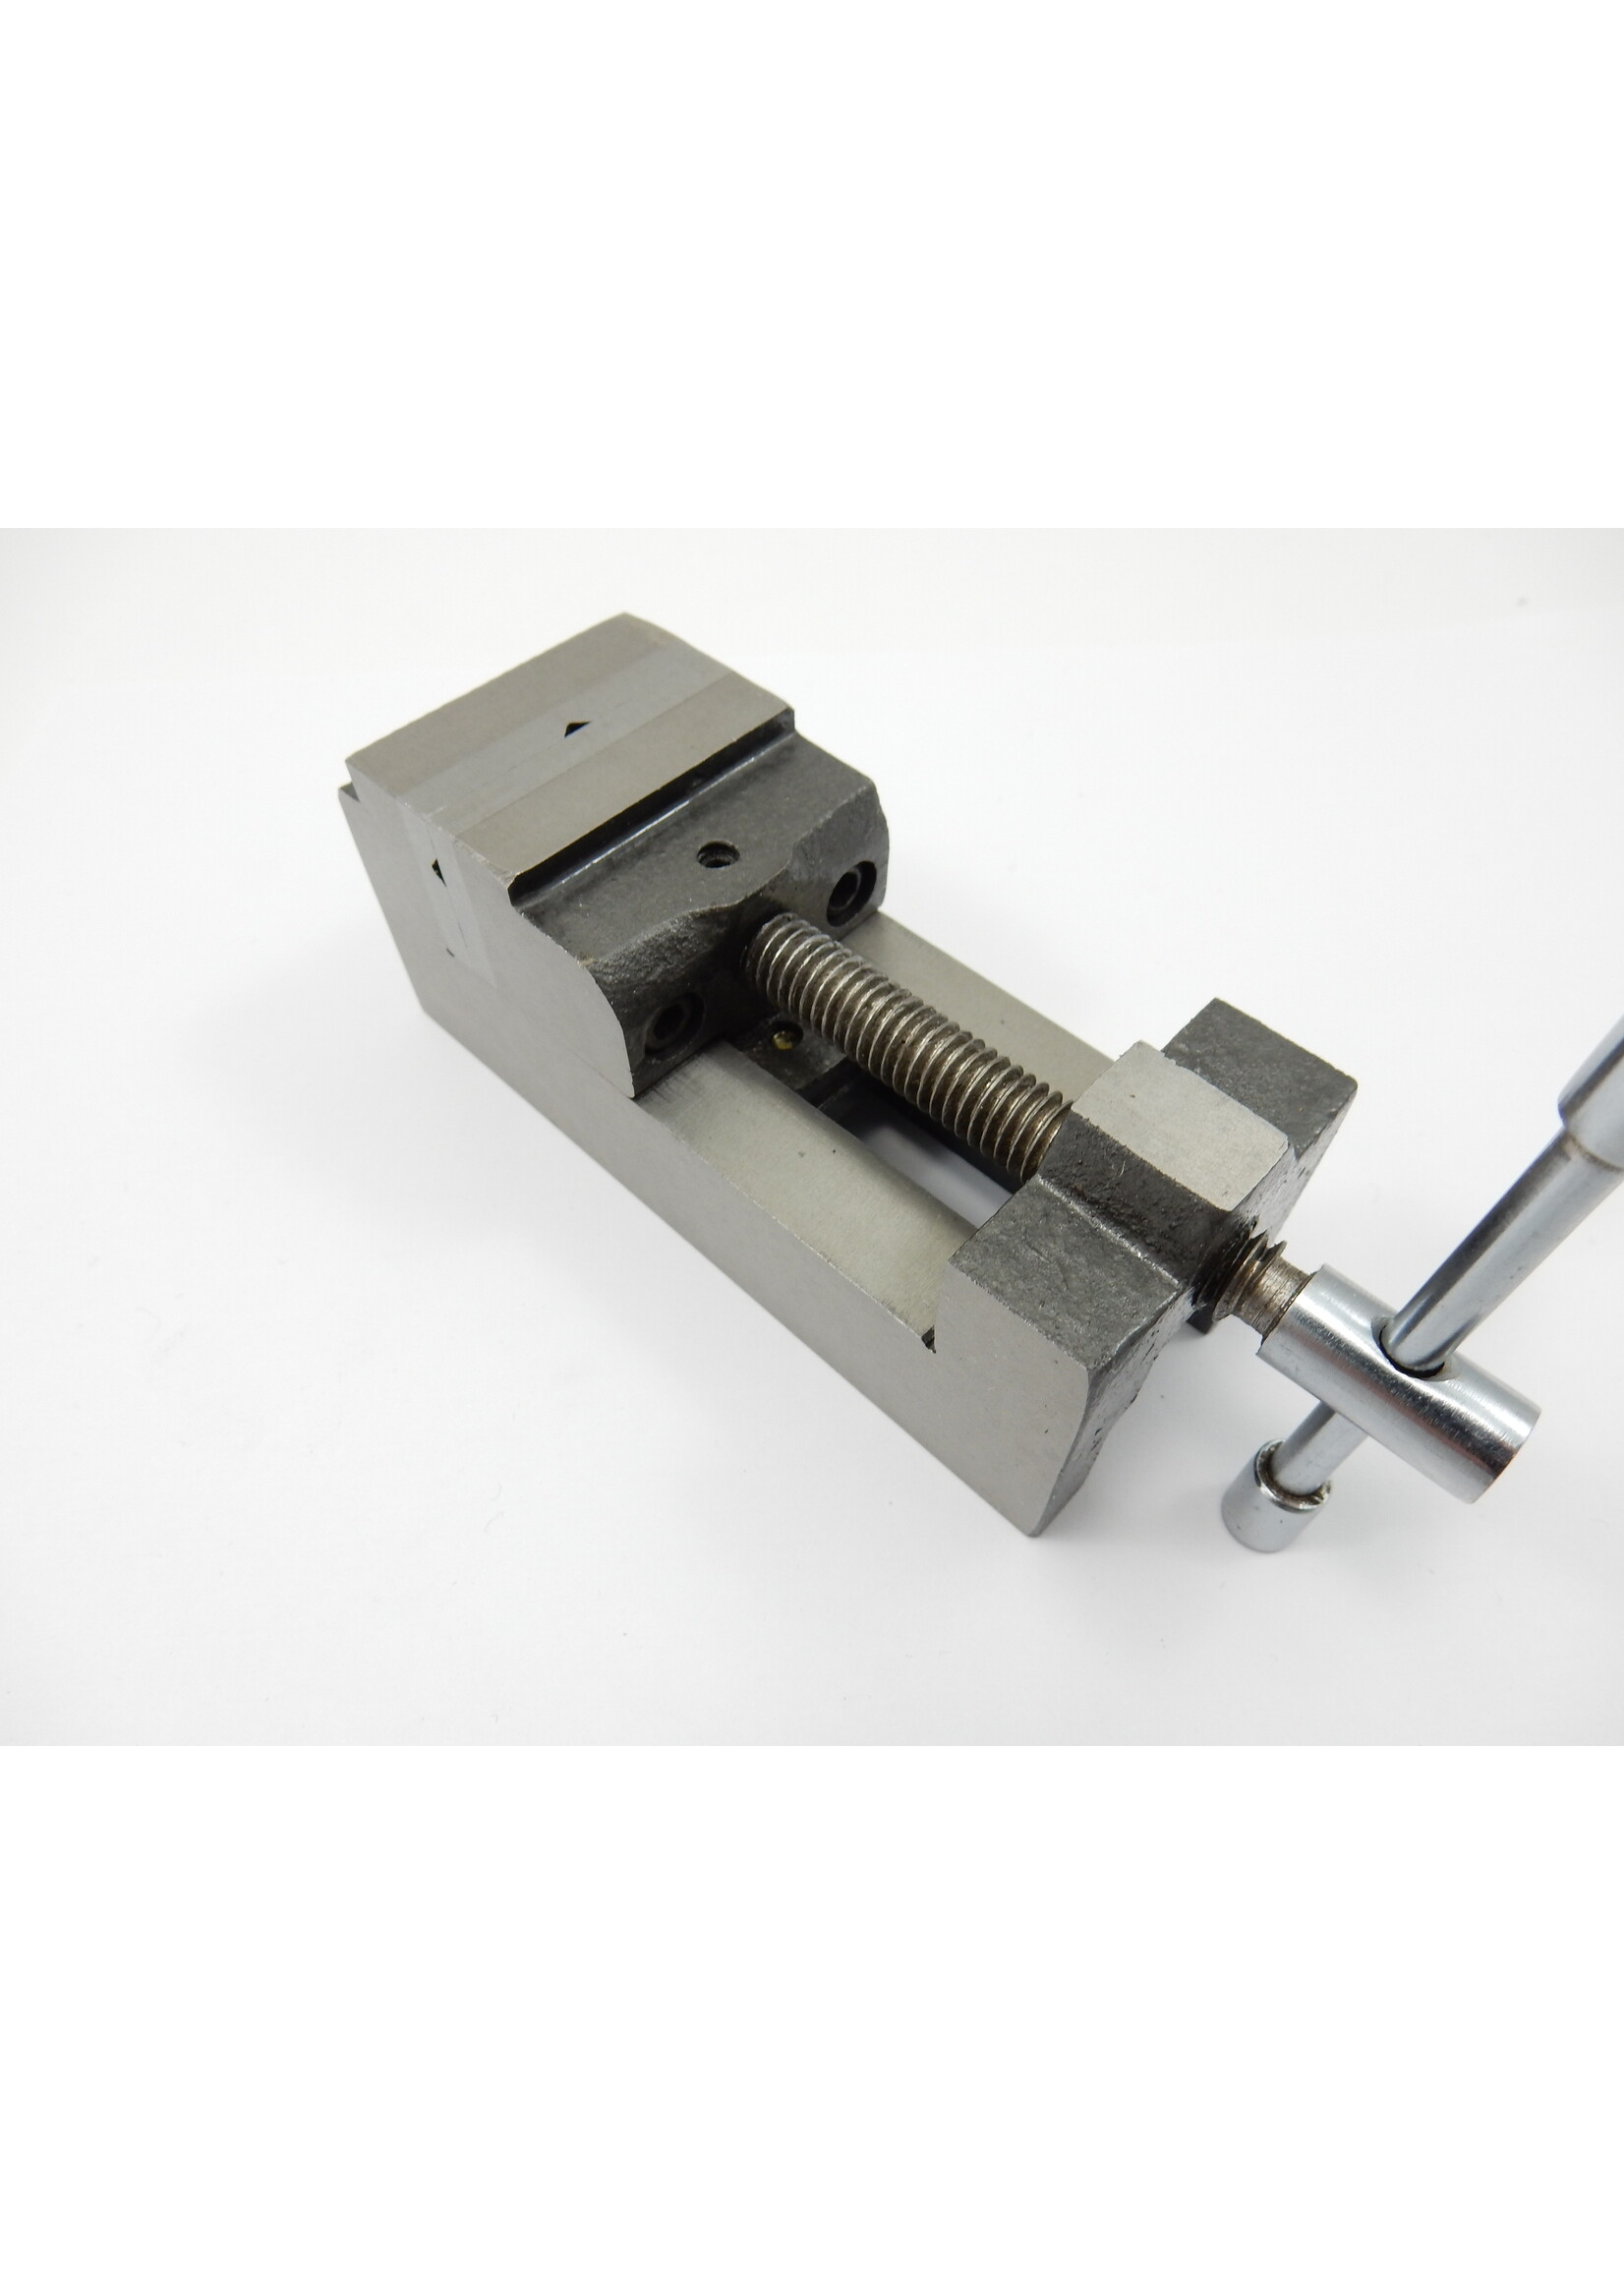 Mini drill press vice / Machine vice